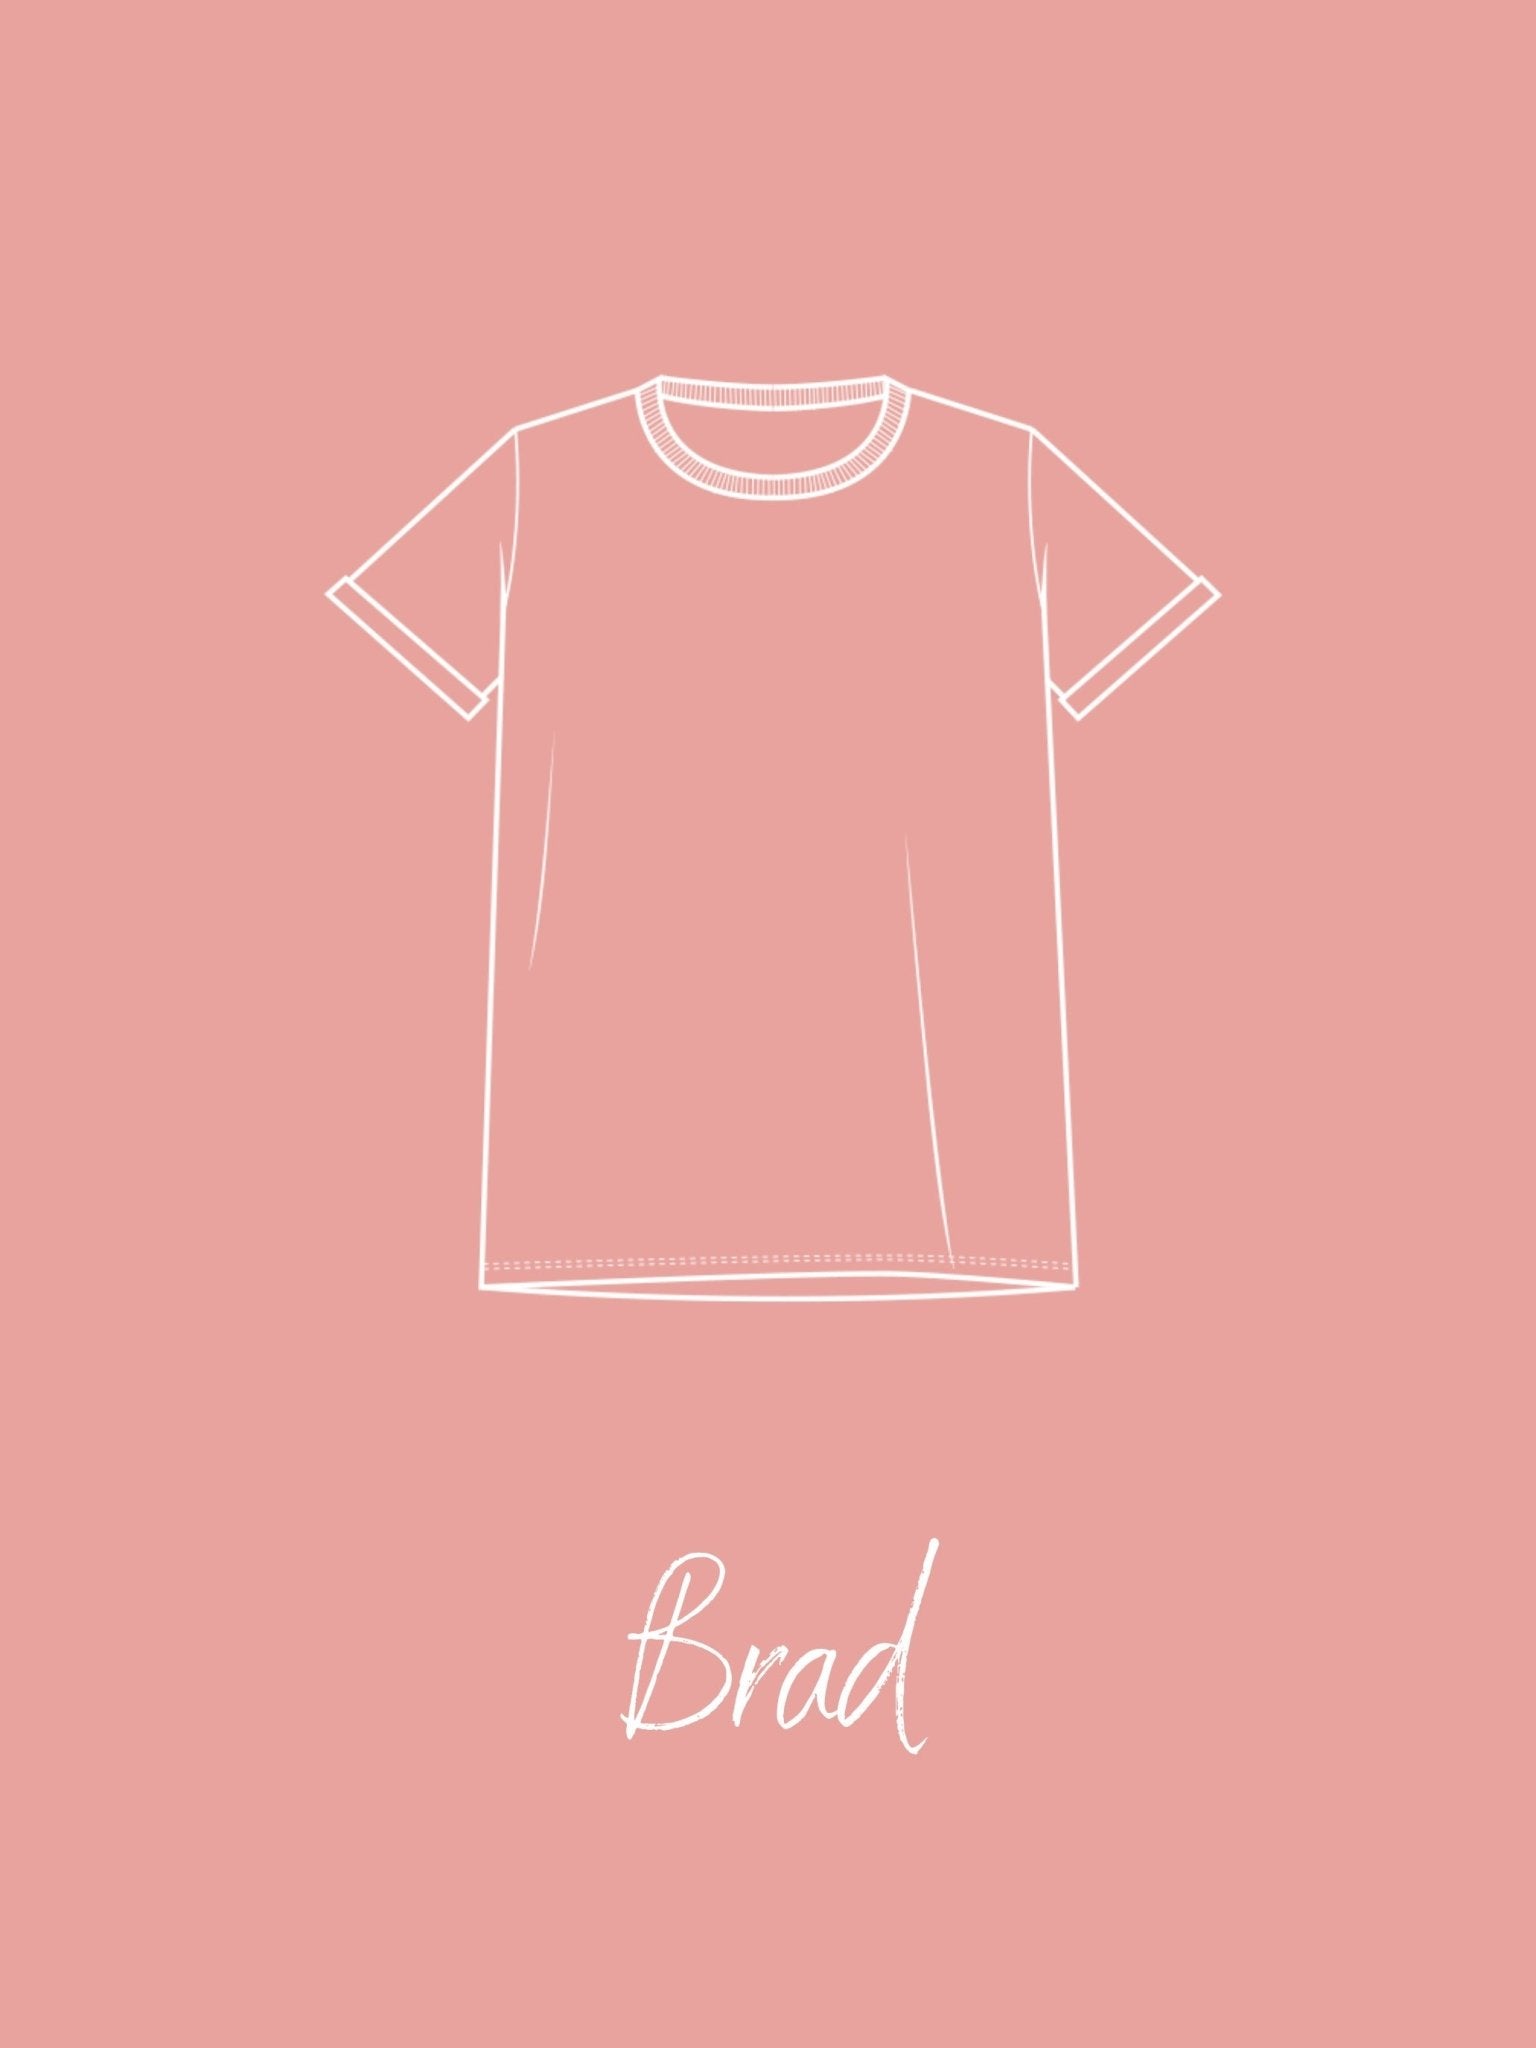 Joli Kit Couture - T-shirt Brad adulte rose - Joli Lab